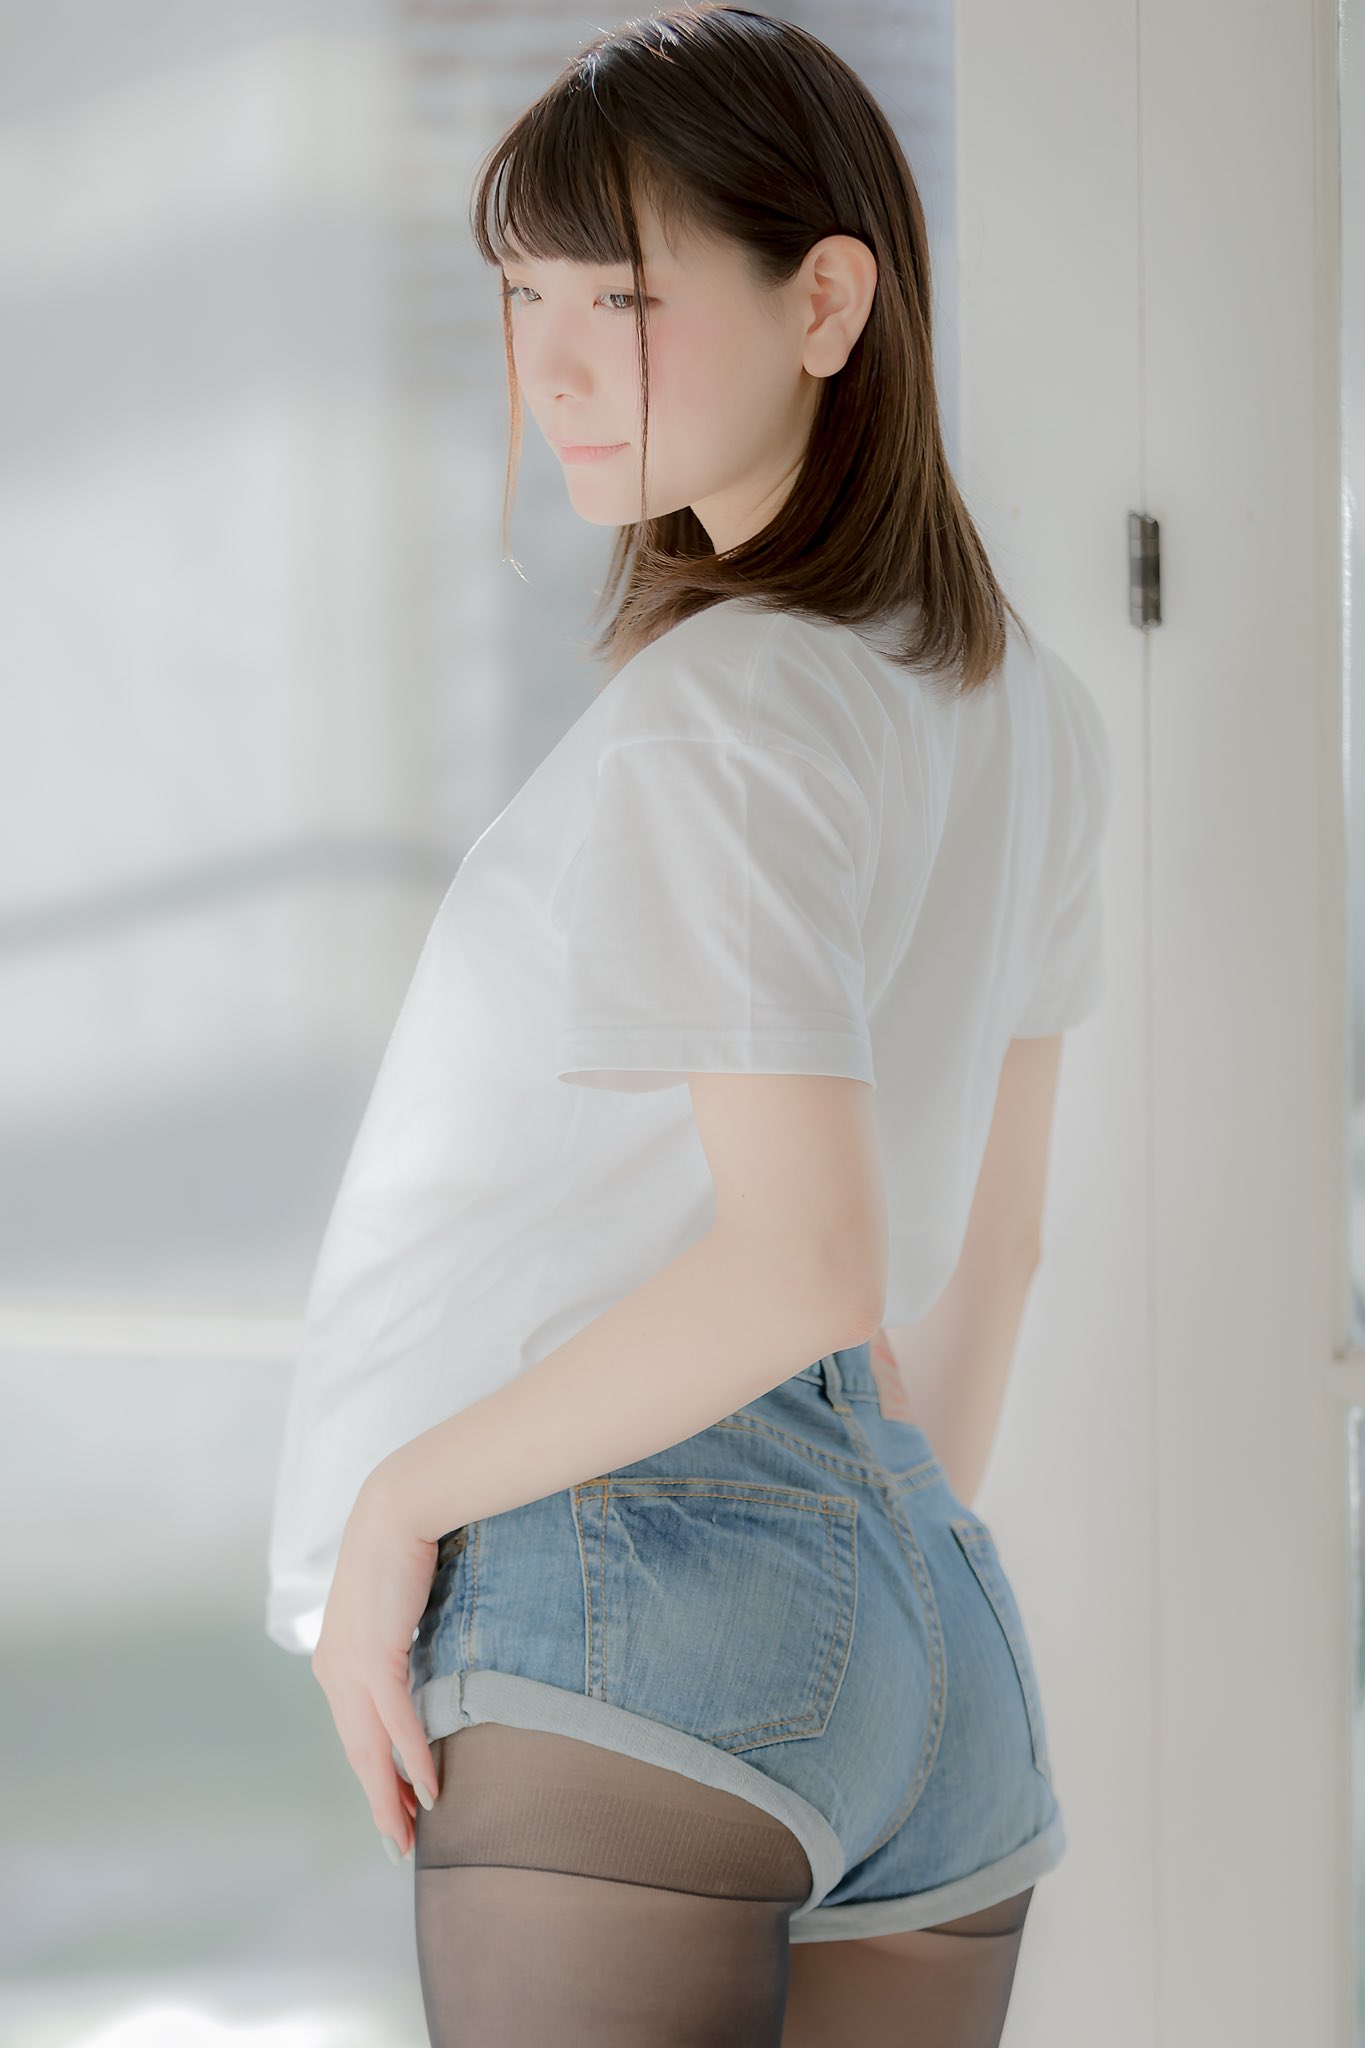 Japanese Women Asian Women Model Barefoot Jeans Short Hair T Shirt White Tops 1365x2048